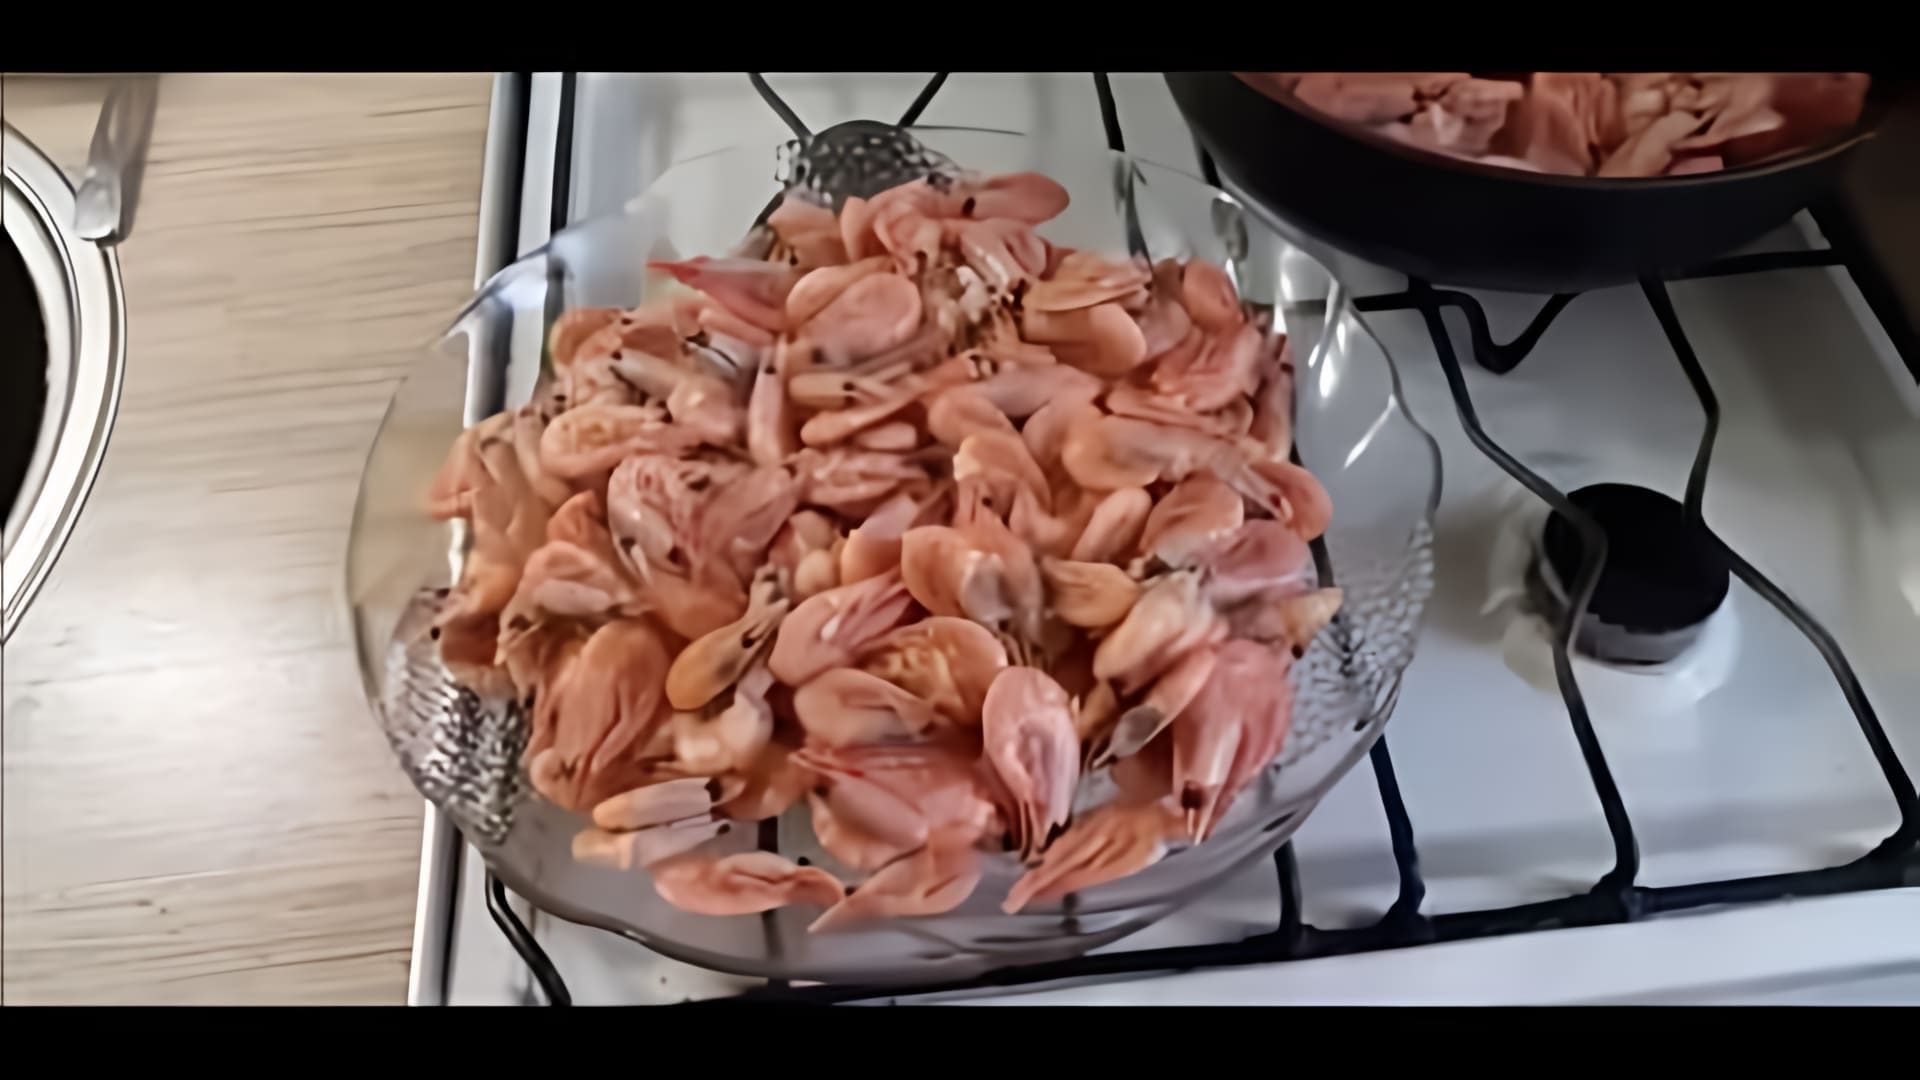 В этом видео демонстрируется процесс приготовления креветок в сливочном масле с чесноком на сковородке